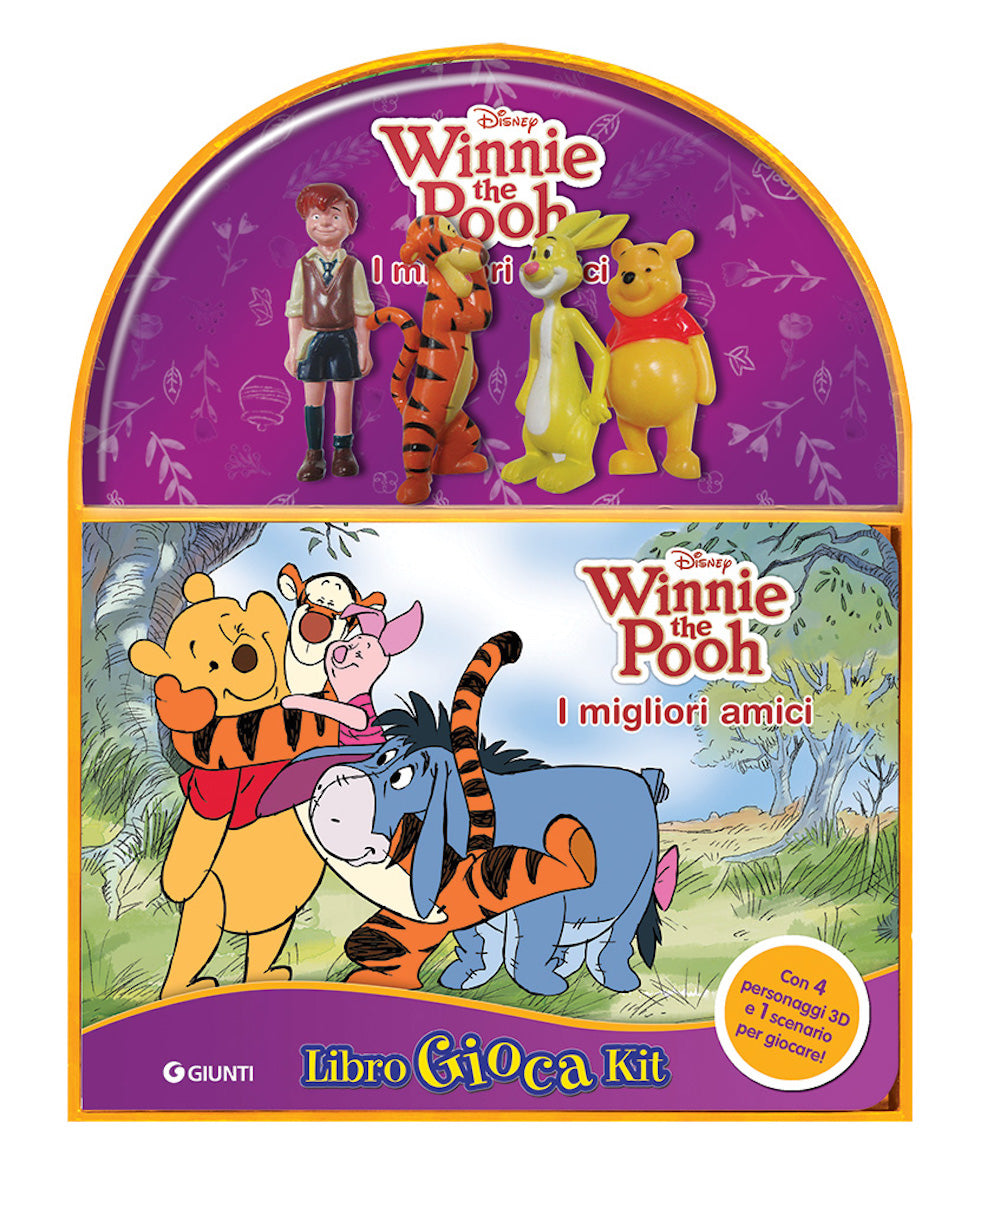 Winnie the Pooh - LibroGiocaKit - I migliori amici::Con 4 personaggi 3D e 1 scenario per giocare!